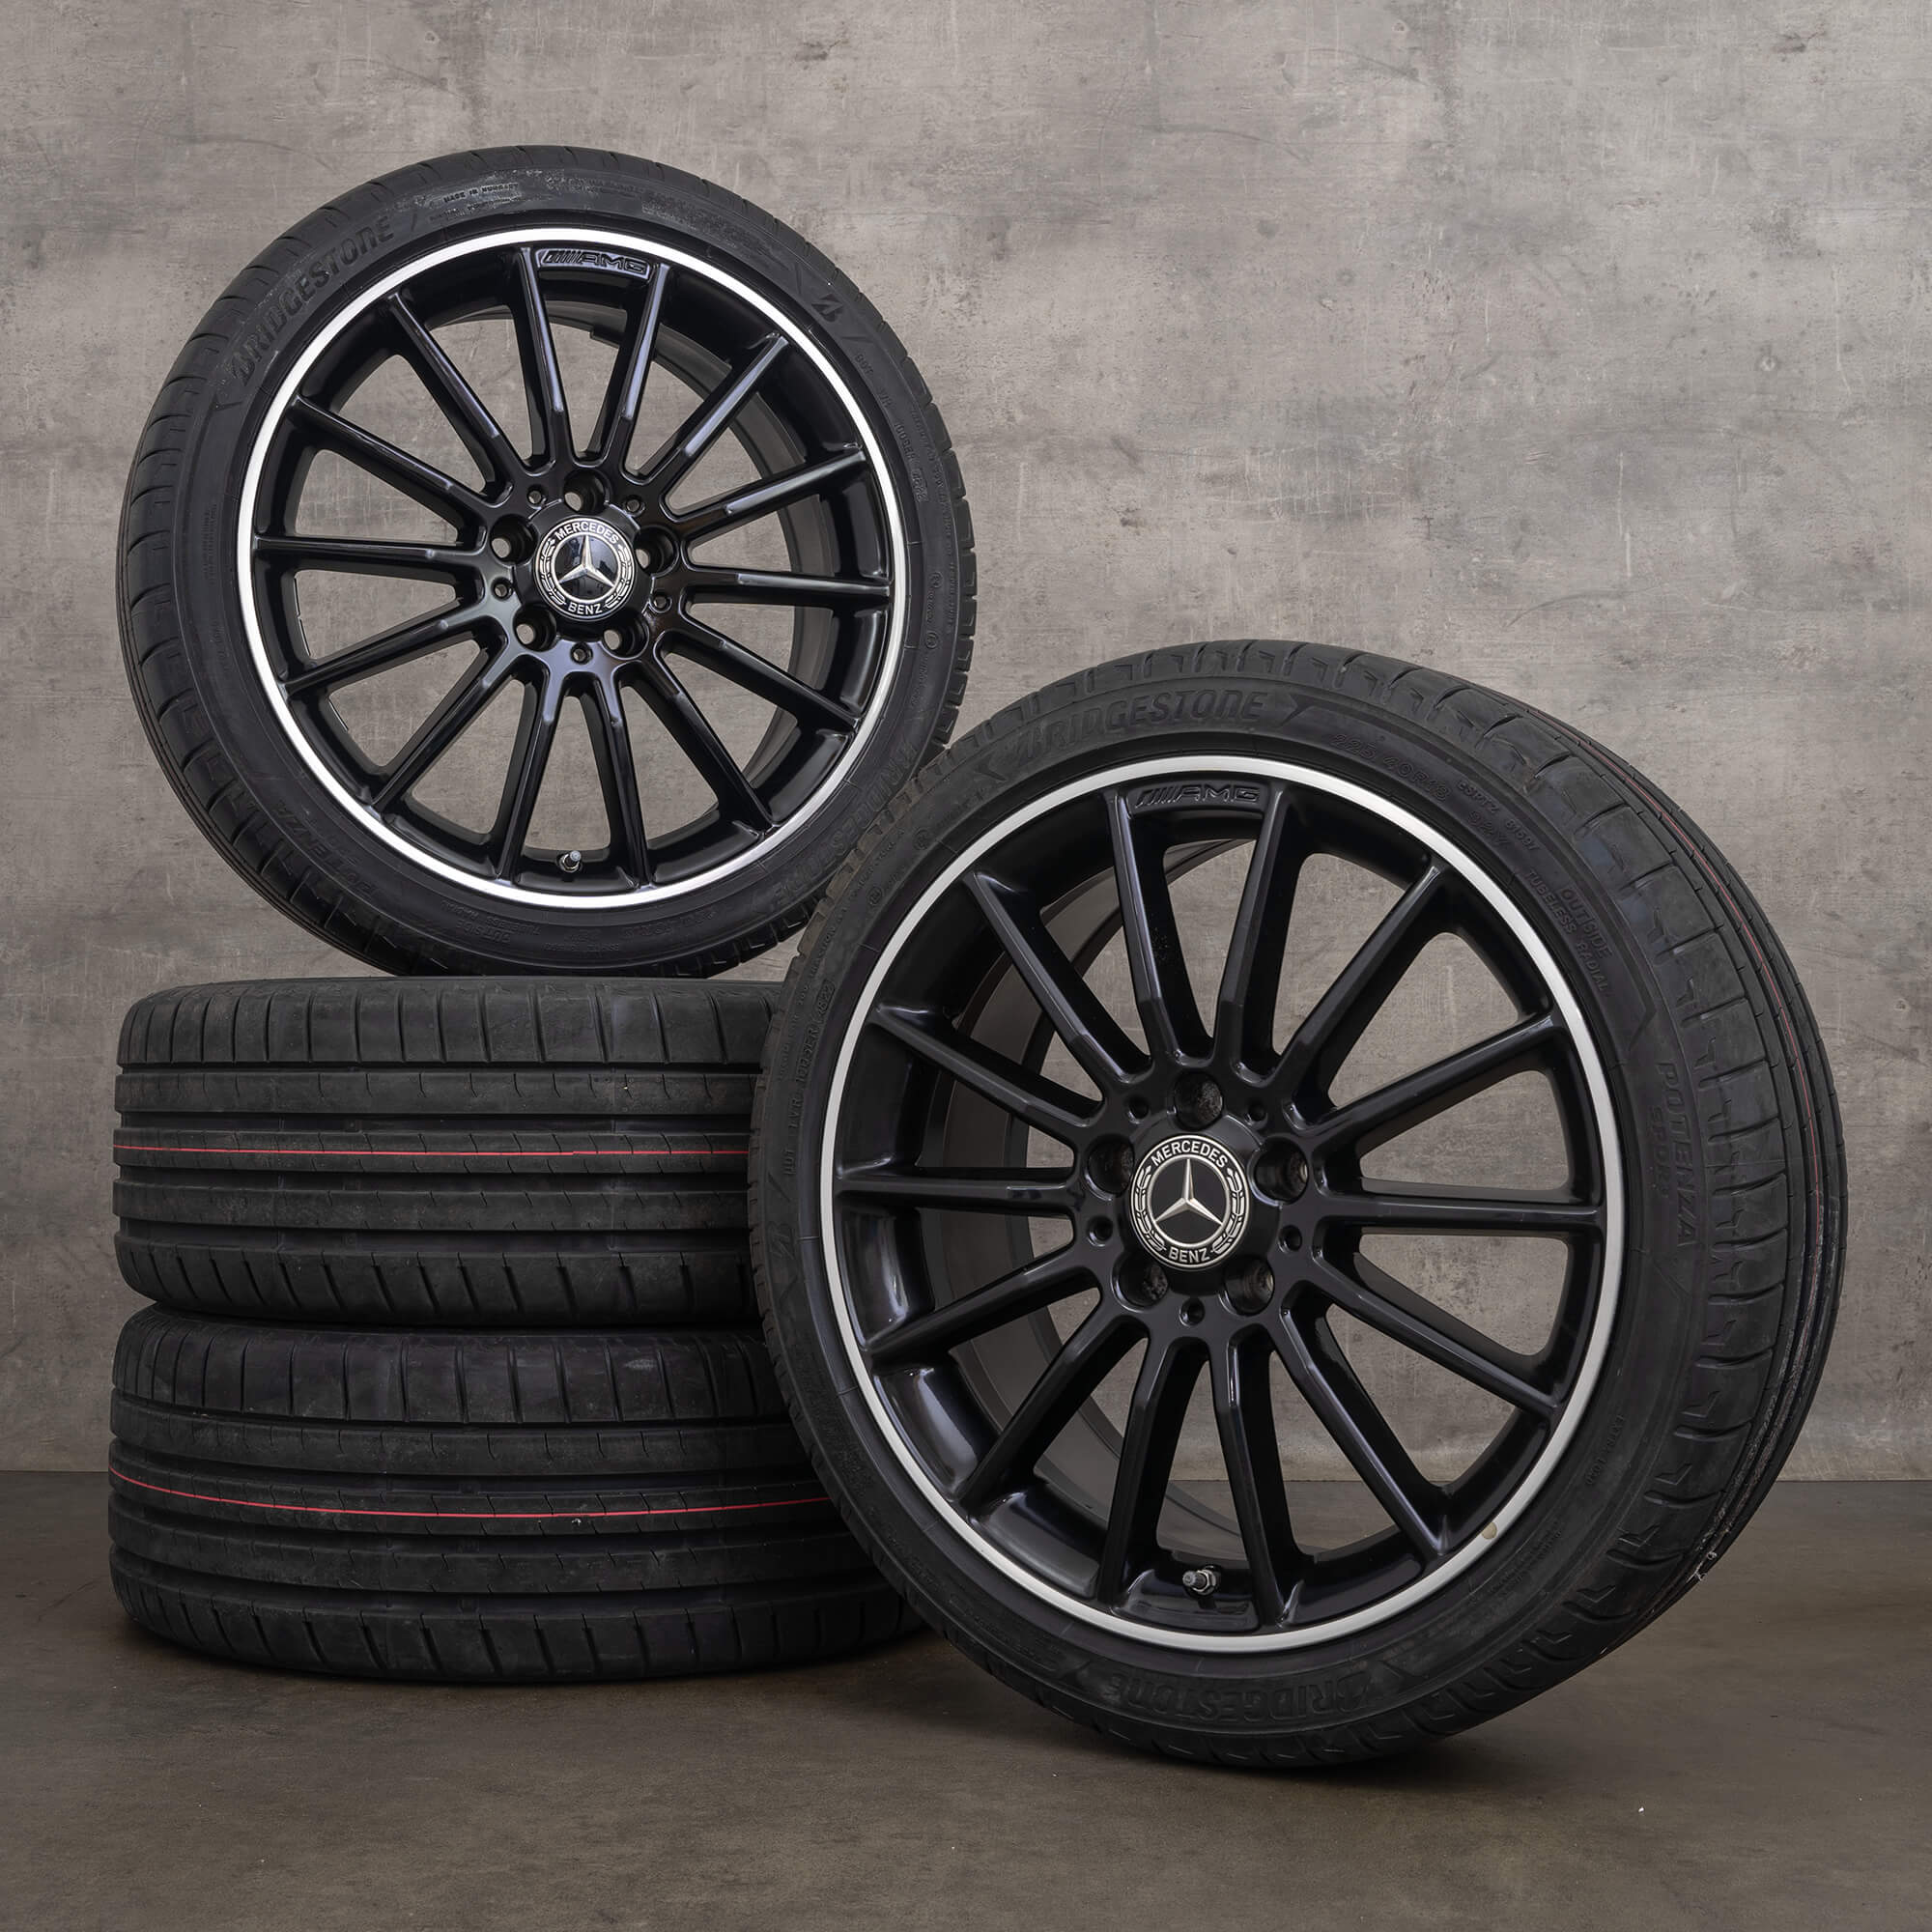 Jantes de pneus verão originais AMG Mercedes Benz CLA C117 X117 18 polegadas A1764011000 rodas pretas